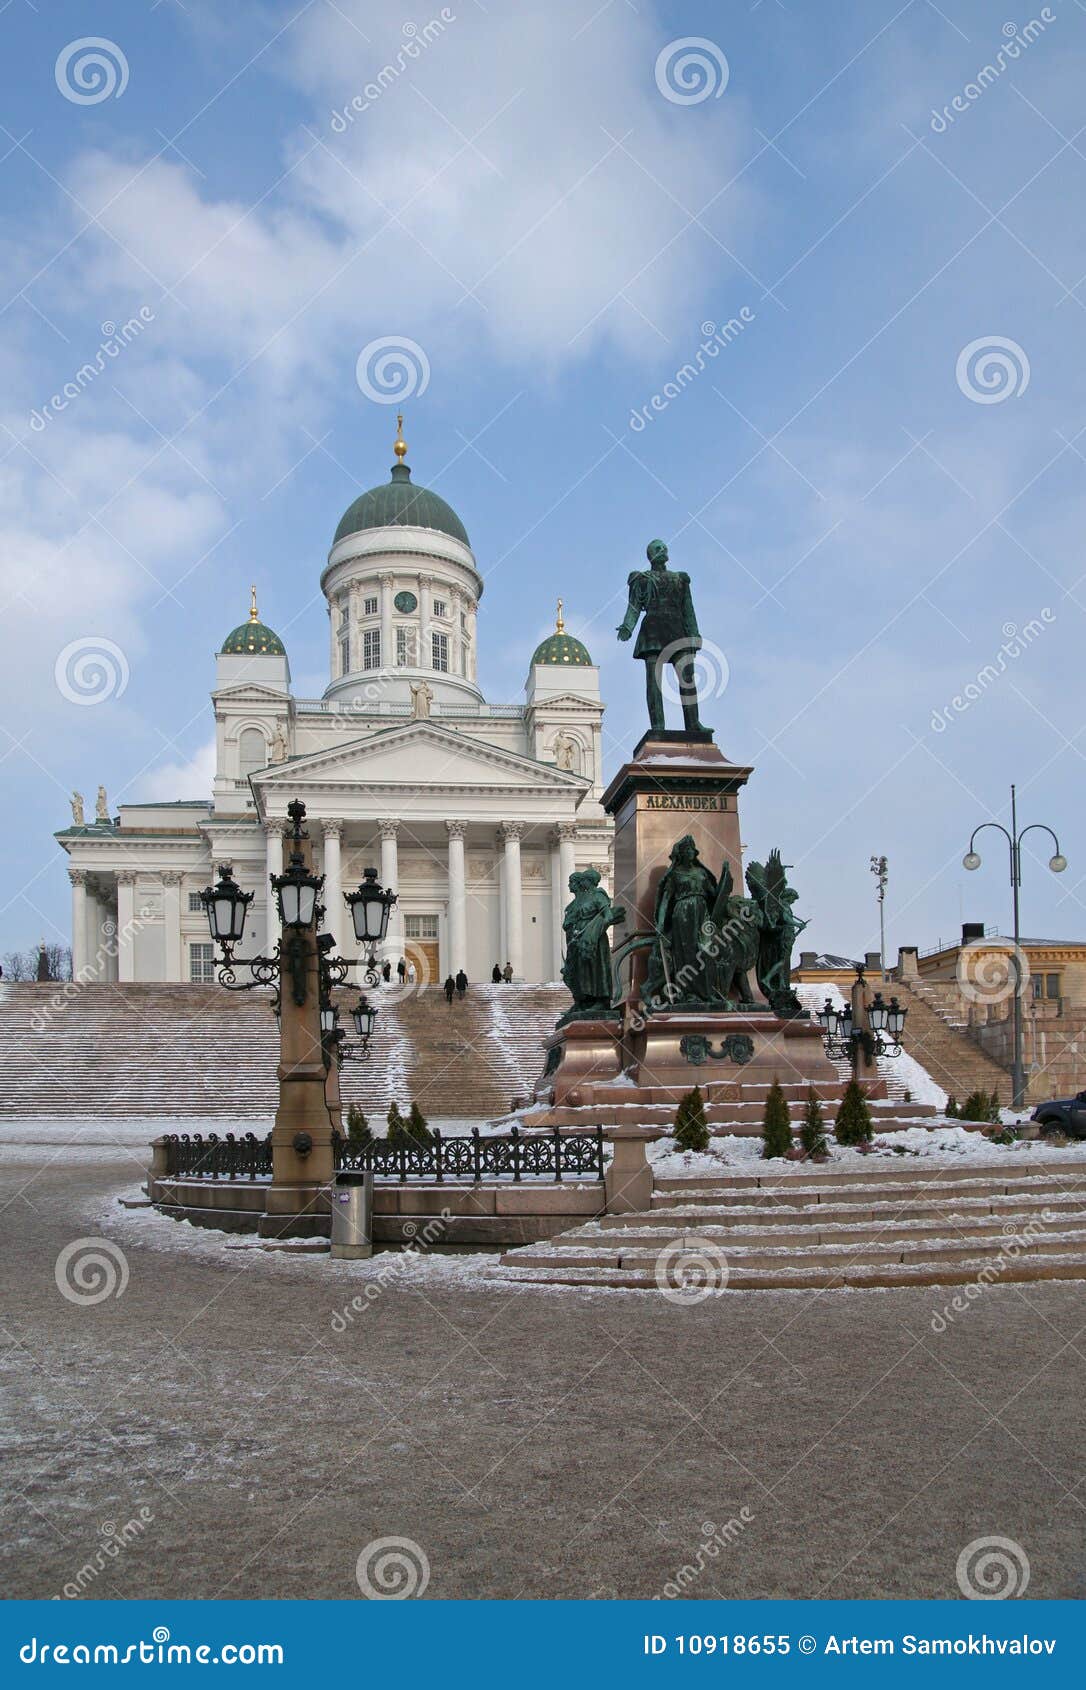 the senate square in helsinki